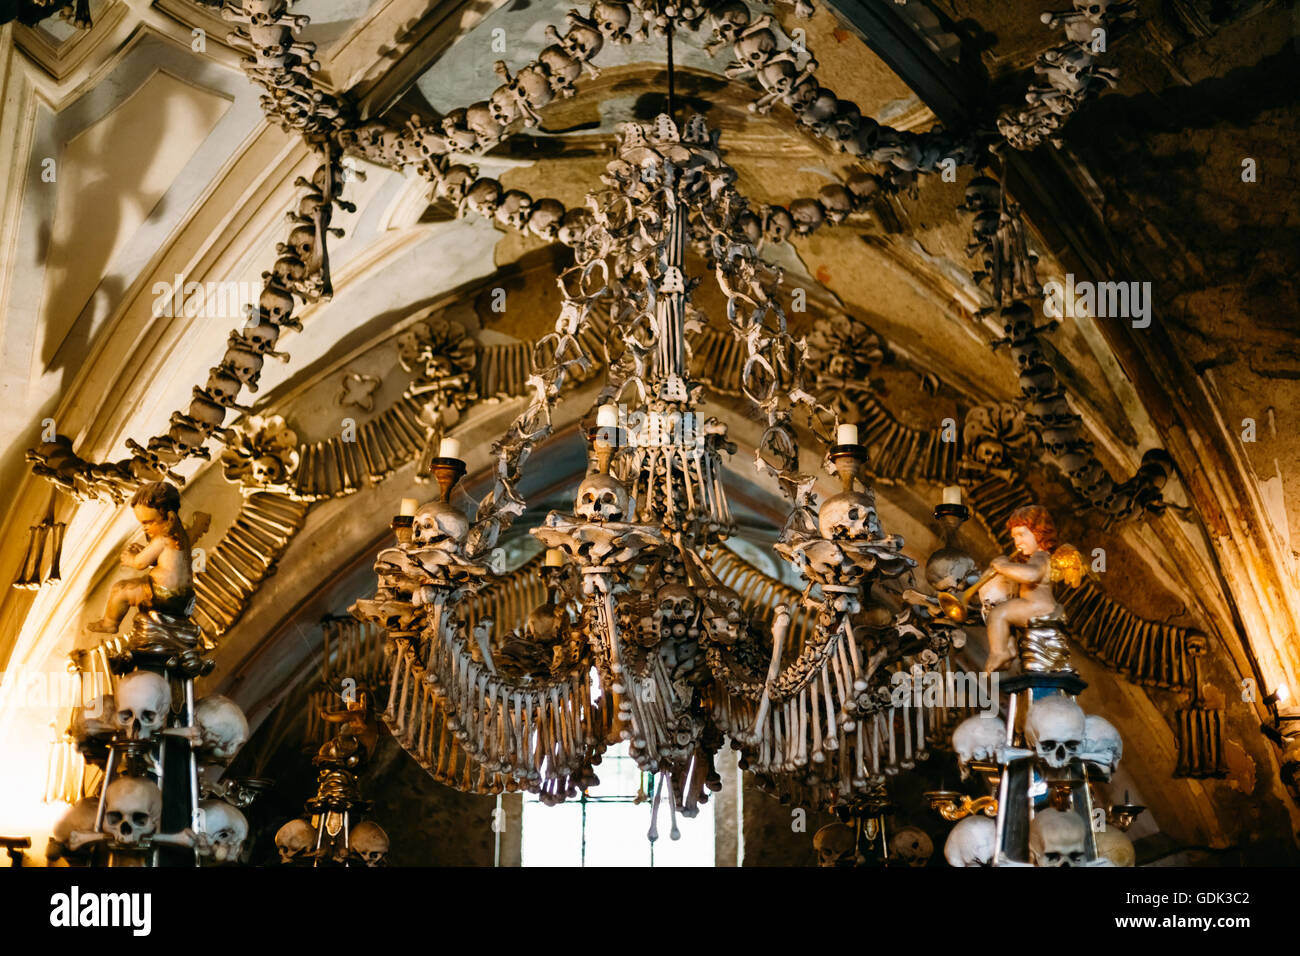 Alte Knochen, Schädel In Sedlec Karner (Beinhaus), Kutna Hora, Tschechien. Beinhaus enthalten Skelette von zwischen 40.000-70.000 Menschen, Wh Stockfoto